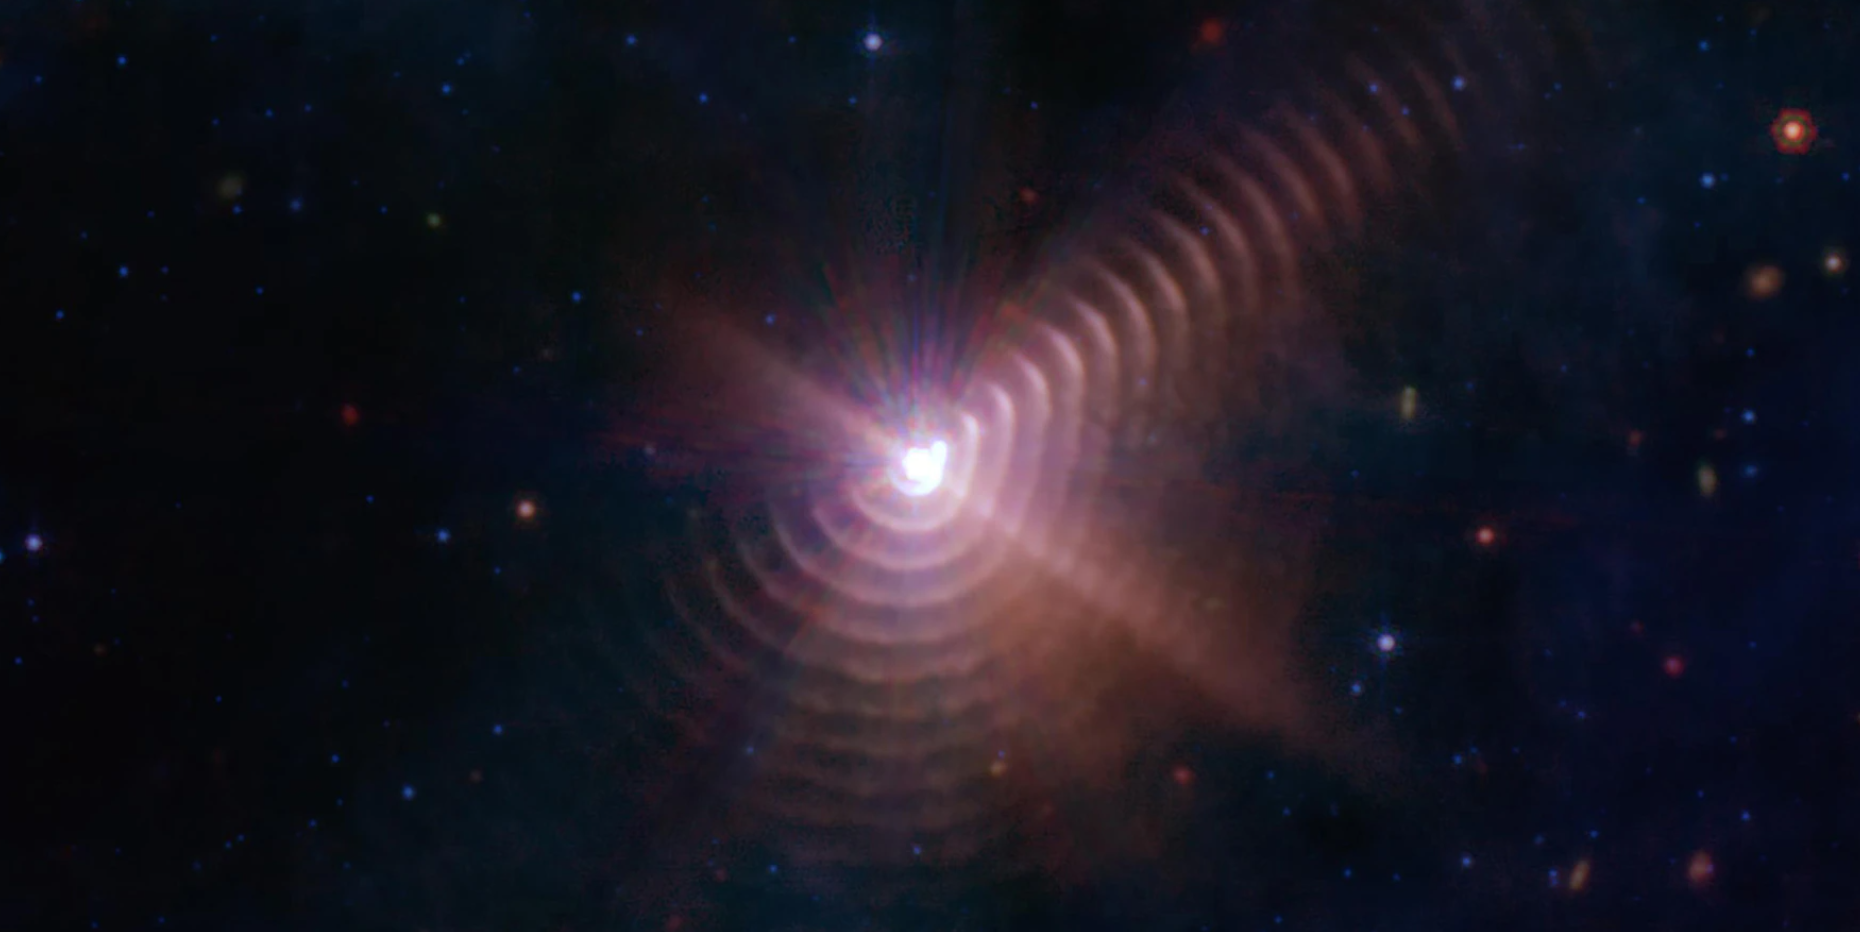 در این تصویر تلسکوپ جیمز وب، پوسته‌های غبار کیهانی مانند حلقه‌های درختی در اطراف ستاره Wolf-Rayet 140 ظاهر می‌شوند. ستاره‌های Wolf-Rayet در مرحله پیشرفته‌ای از چرخه زندگی خود هستند و عناصر سنگین را در فضا رها می‌کنند.